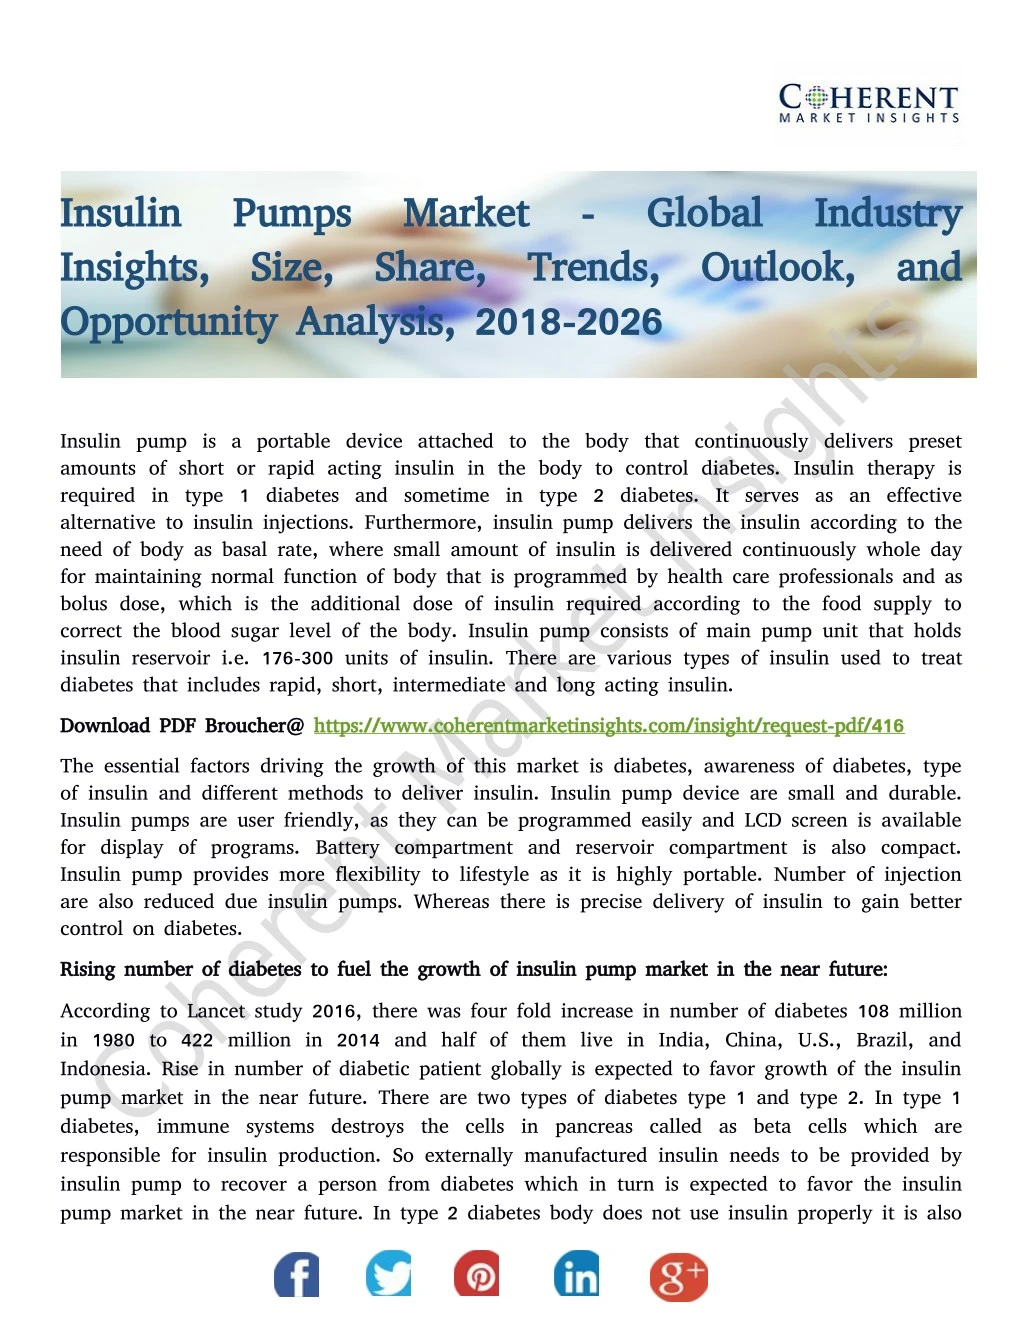 insulin pumps market global industry insulin